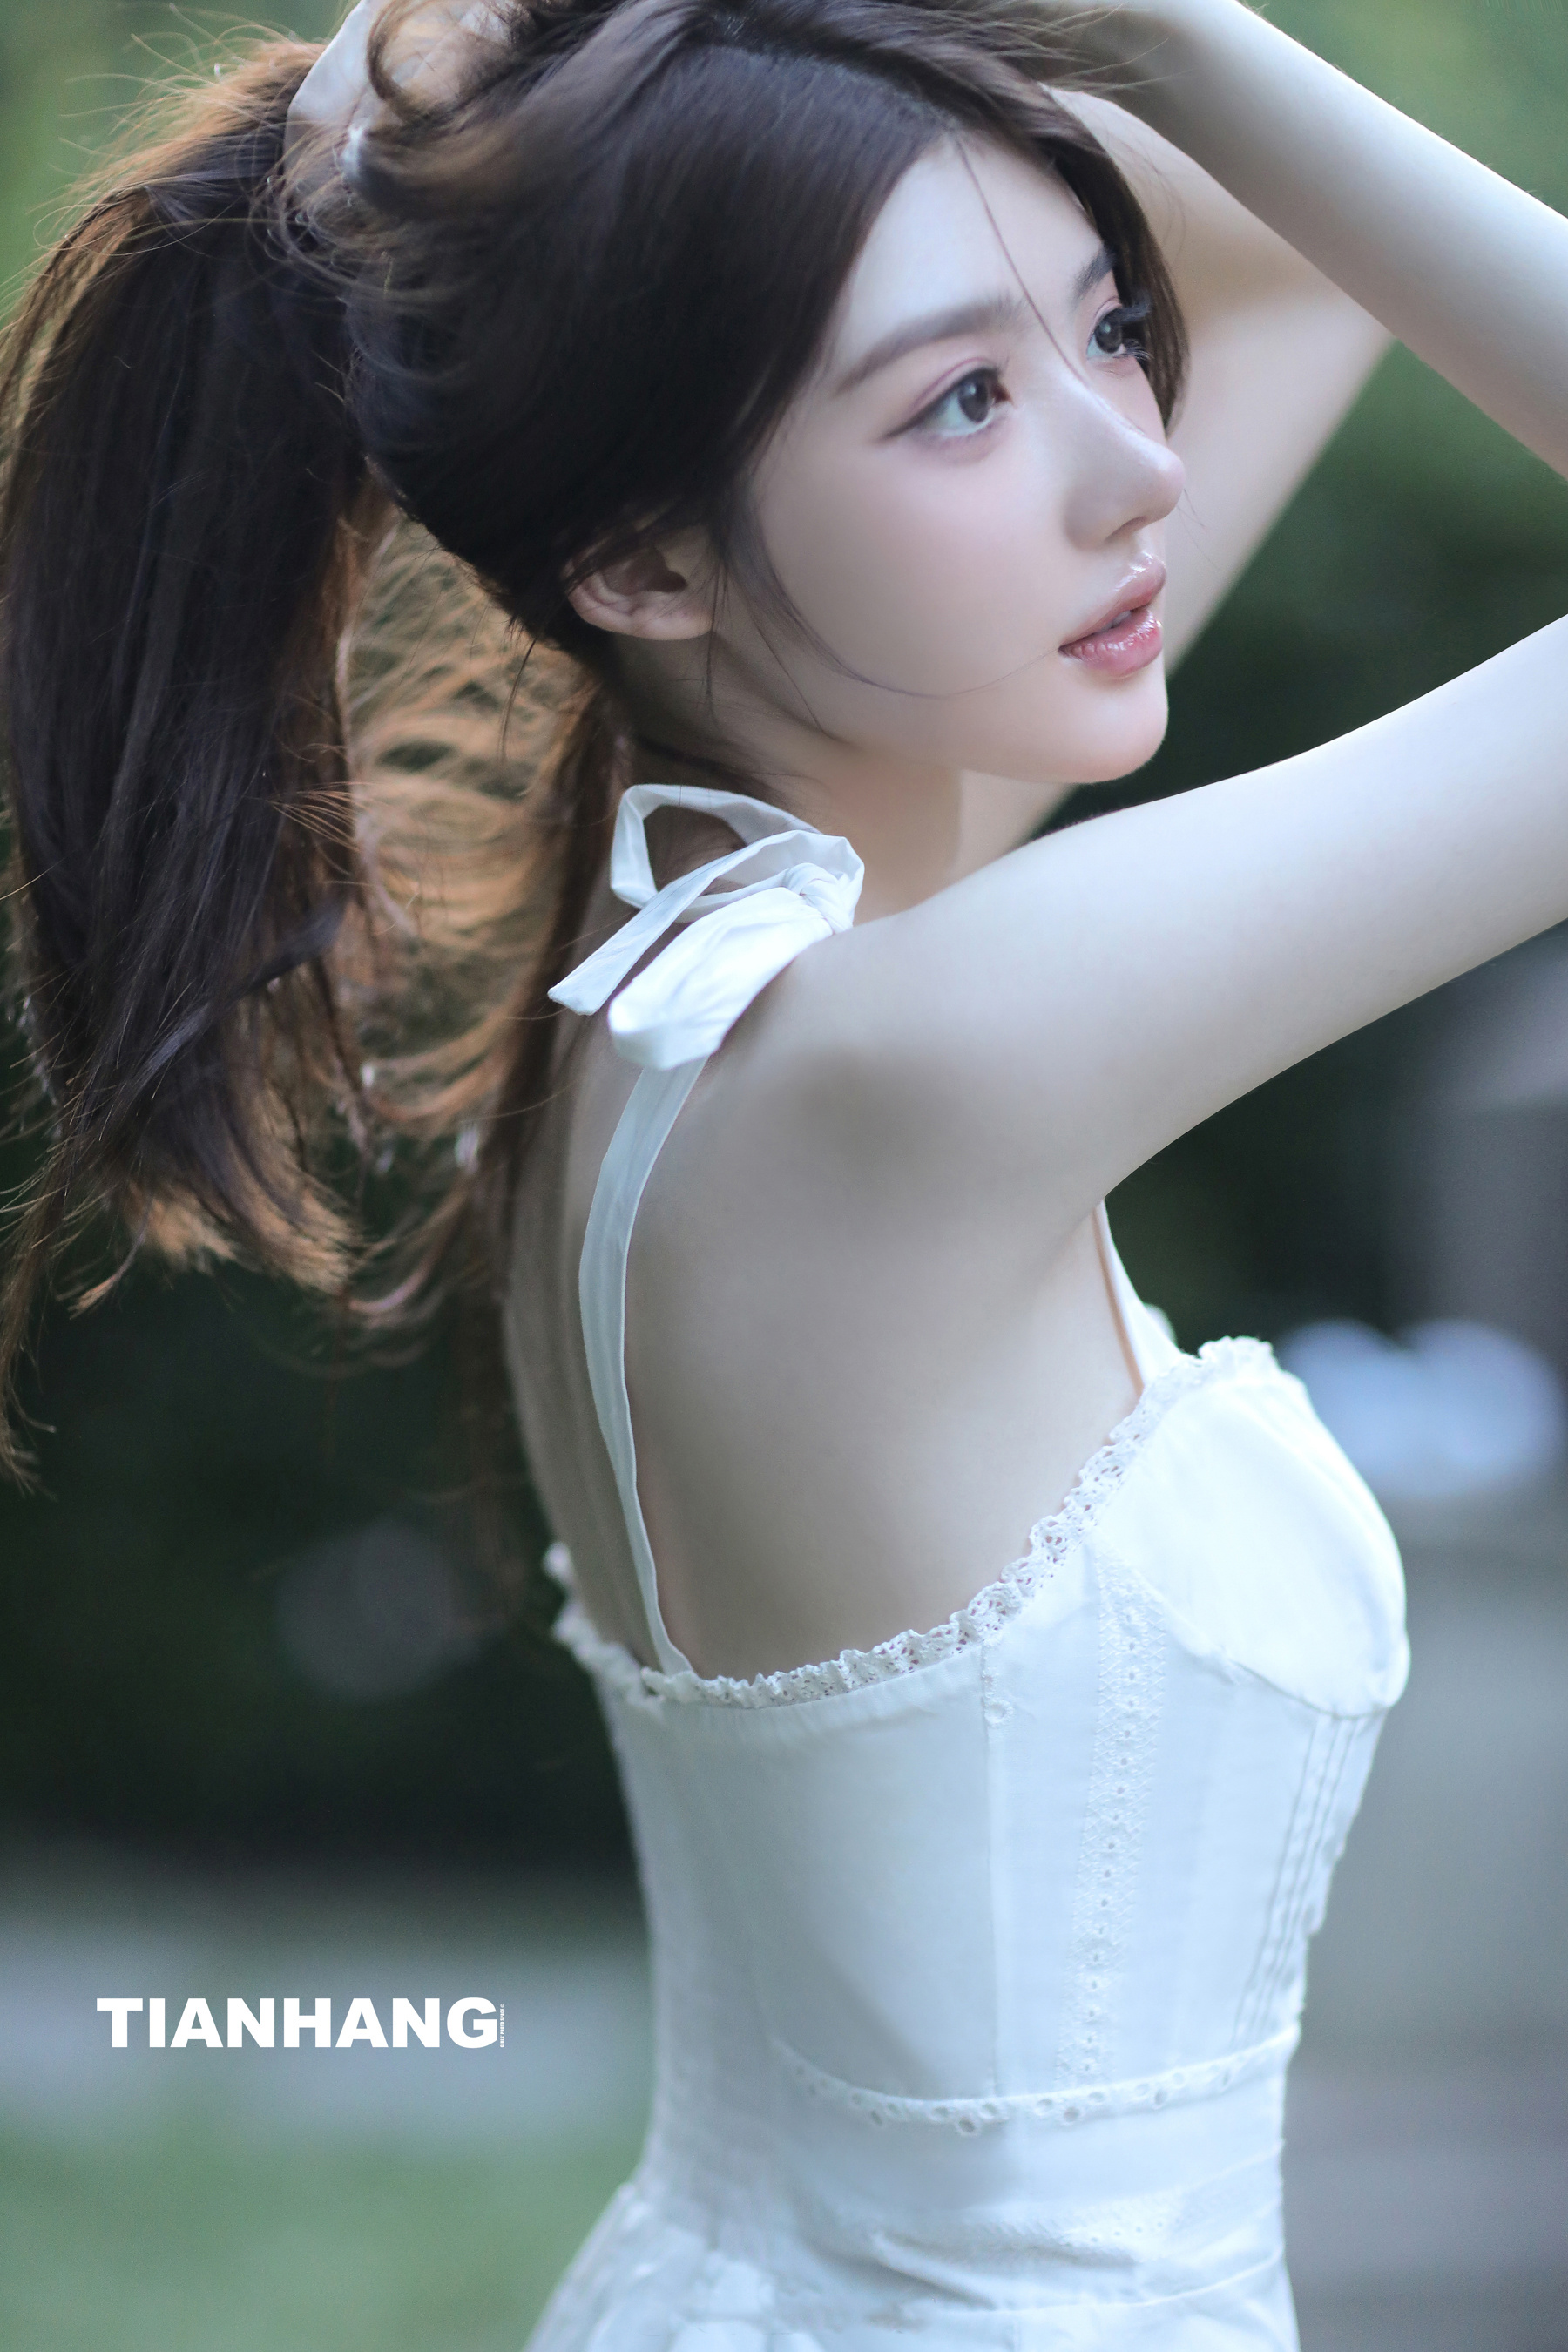 Chinese Model White Skirt Long Hair Women Asian 1800x2700